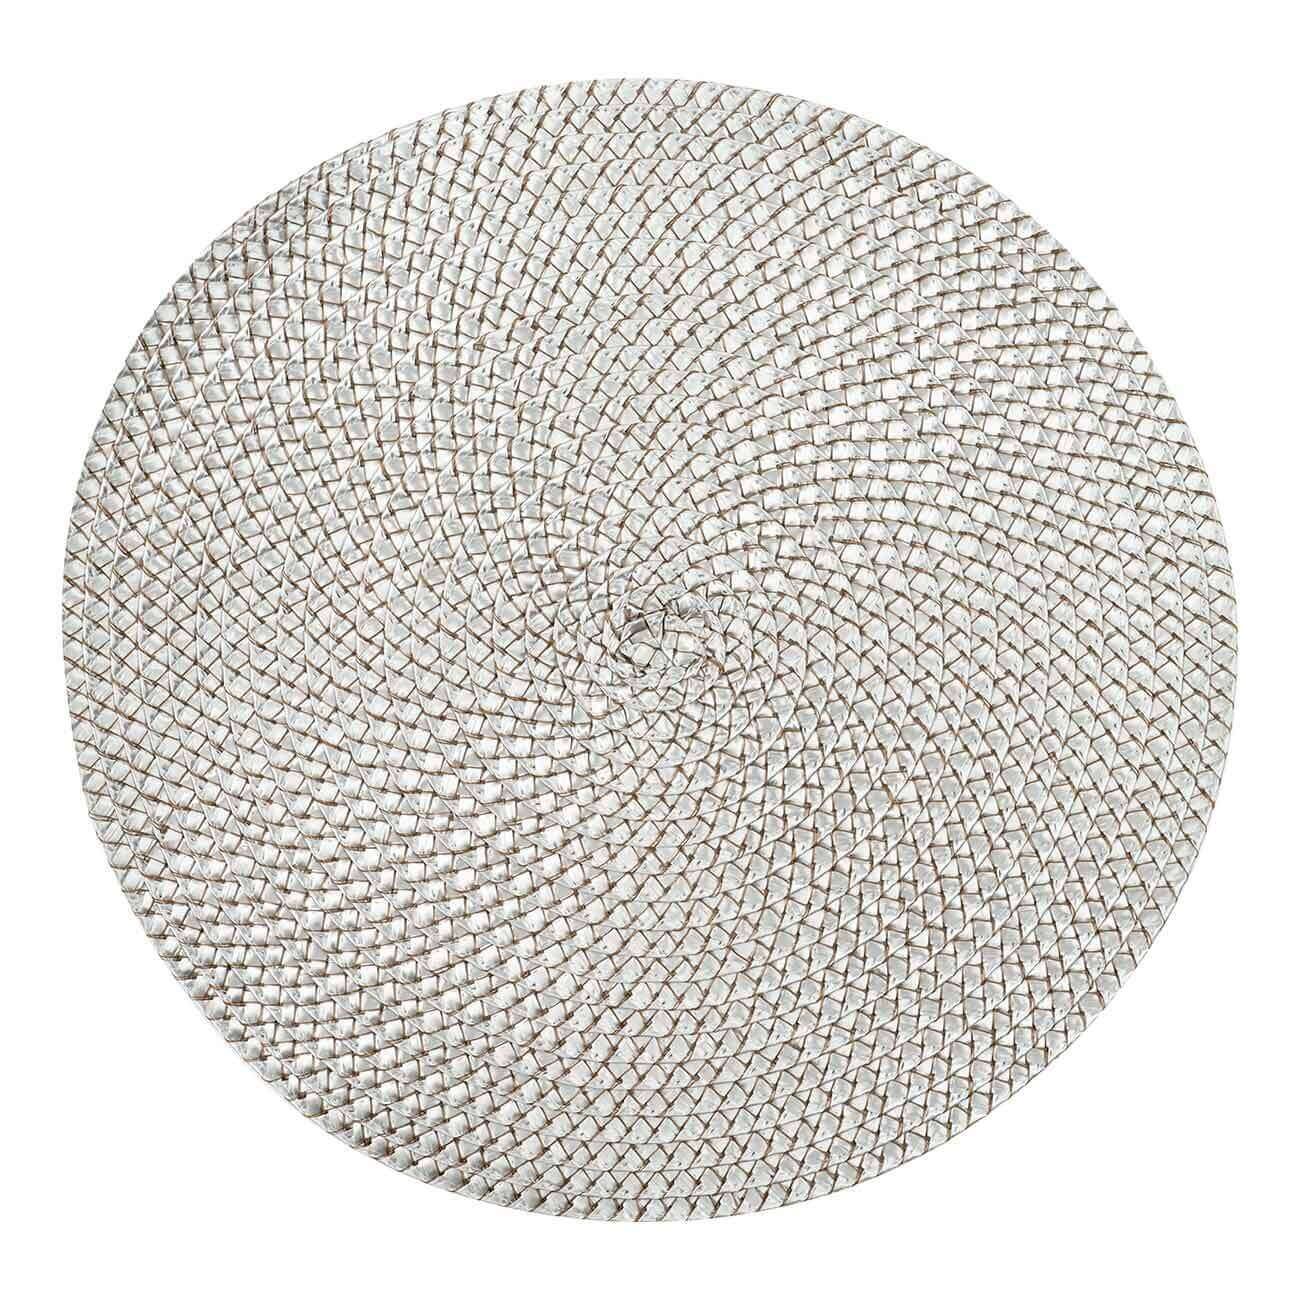 Салфетка под приборы, 38 см, полипропилен/ПЭТ, круглая, серебристая, Circle braid изображение № 1